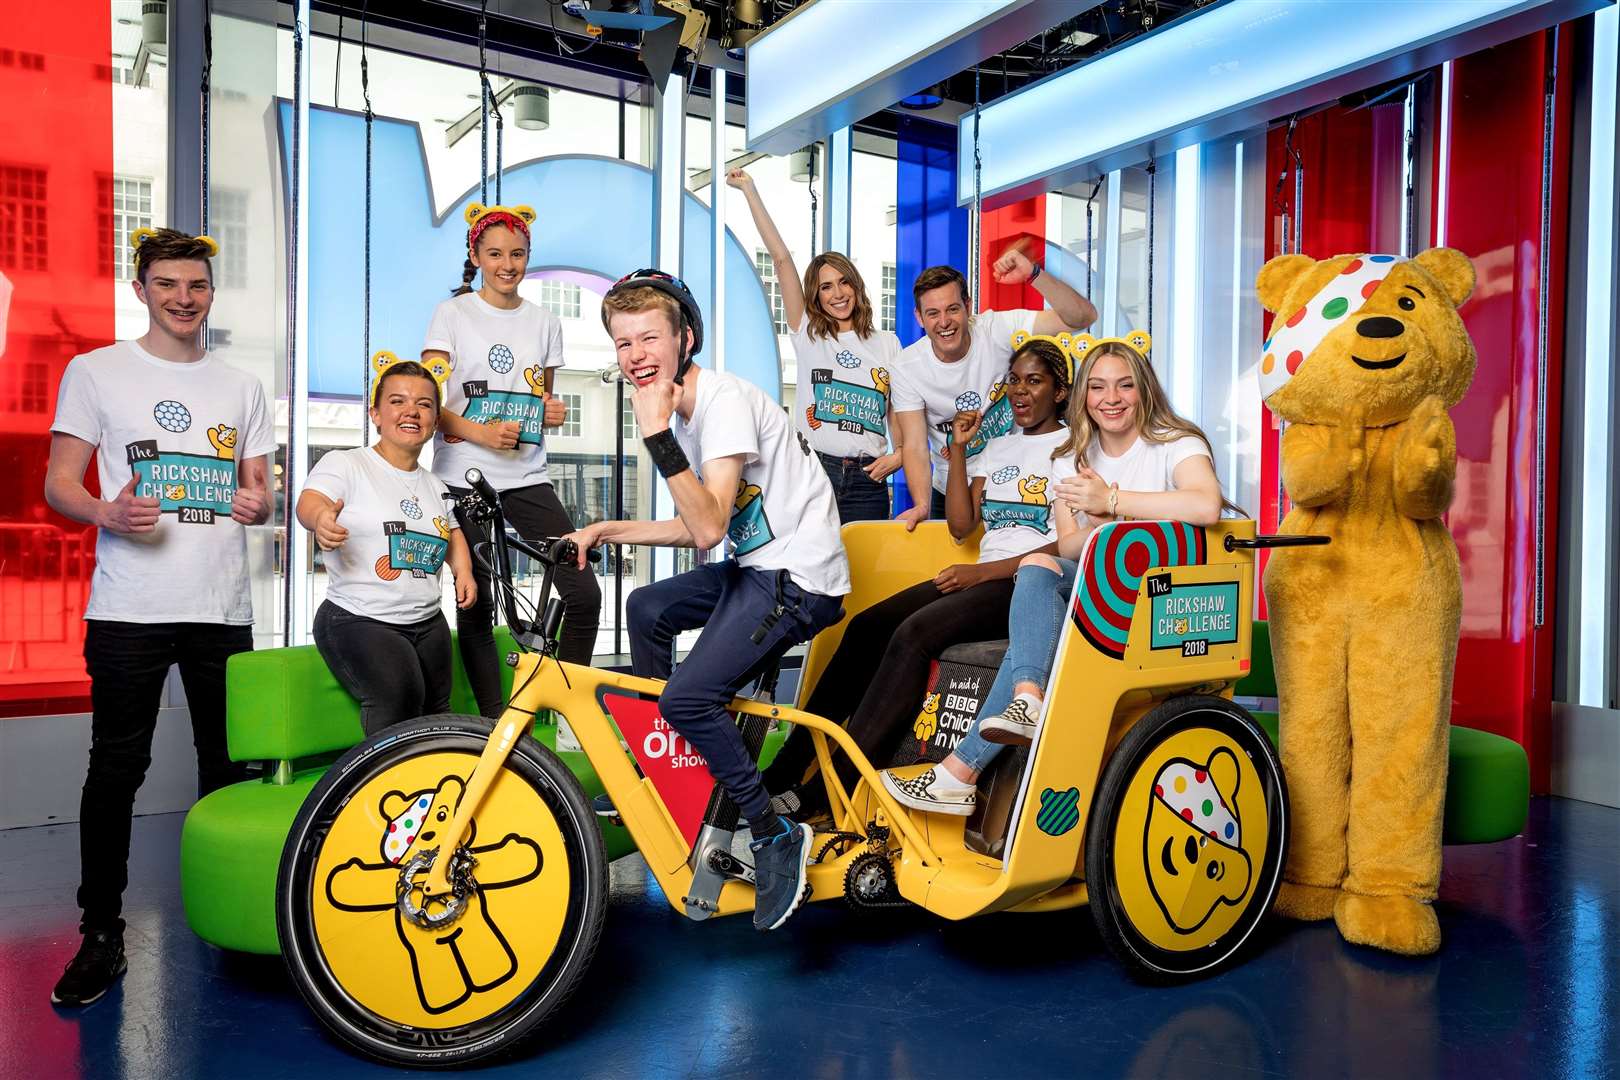 One Show's Rickshaw Challenge will raise money for Children in Need